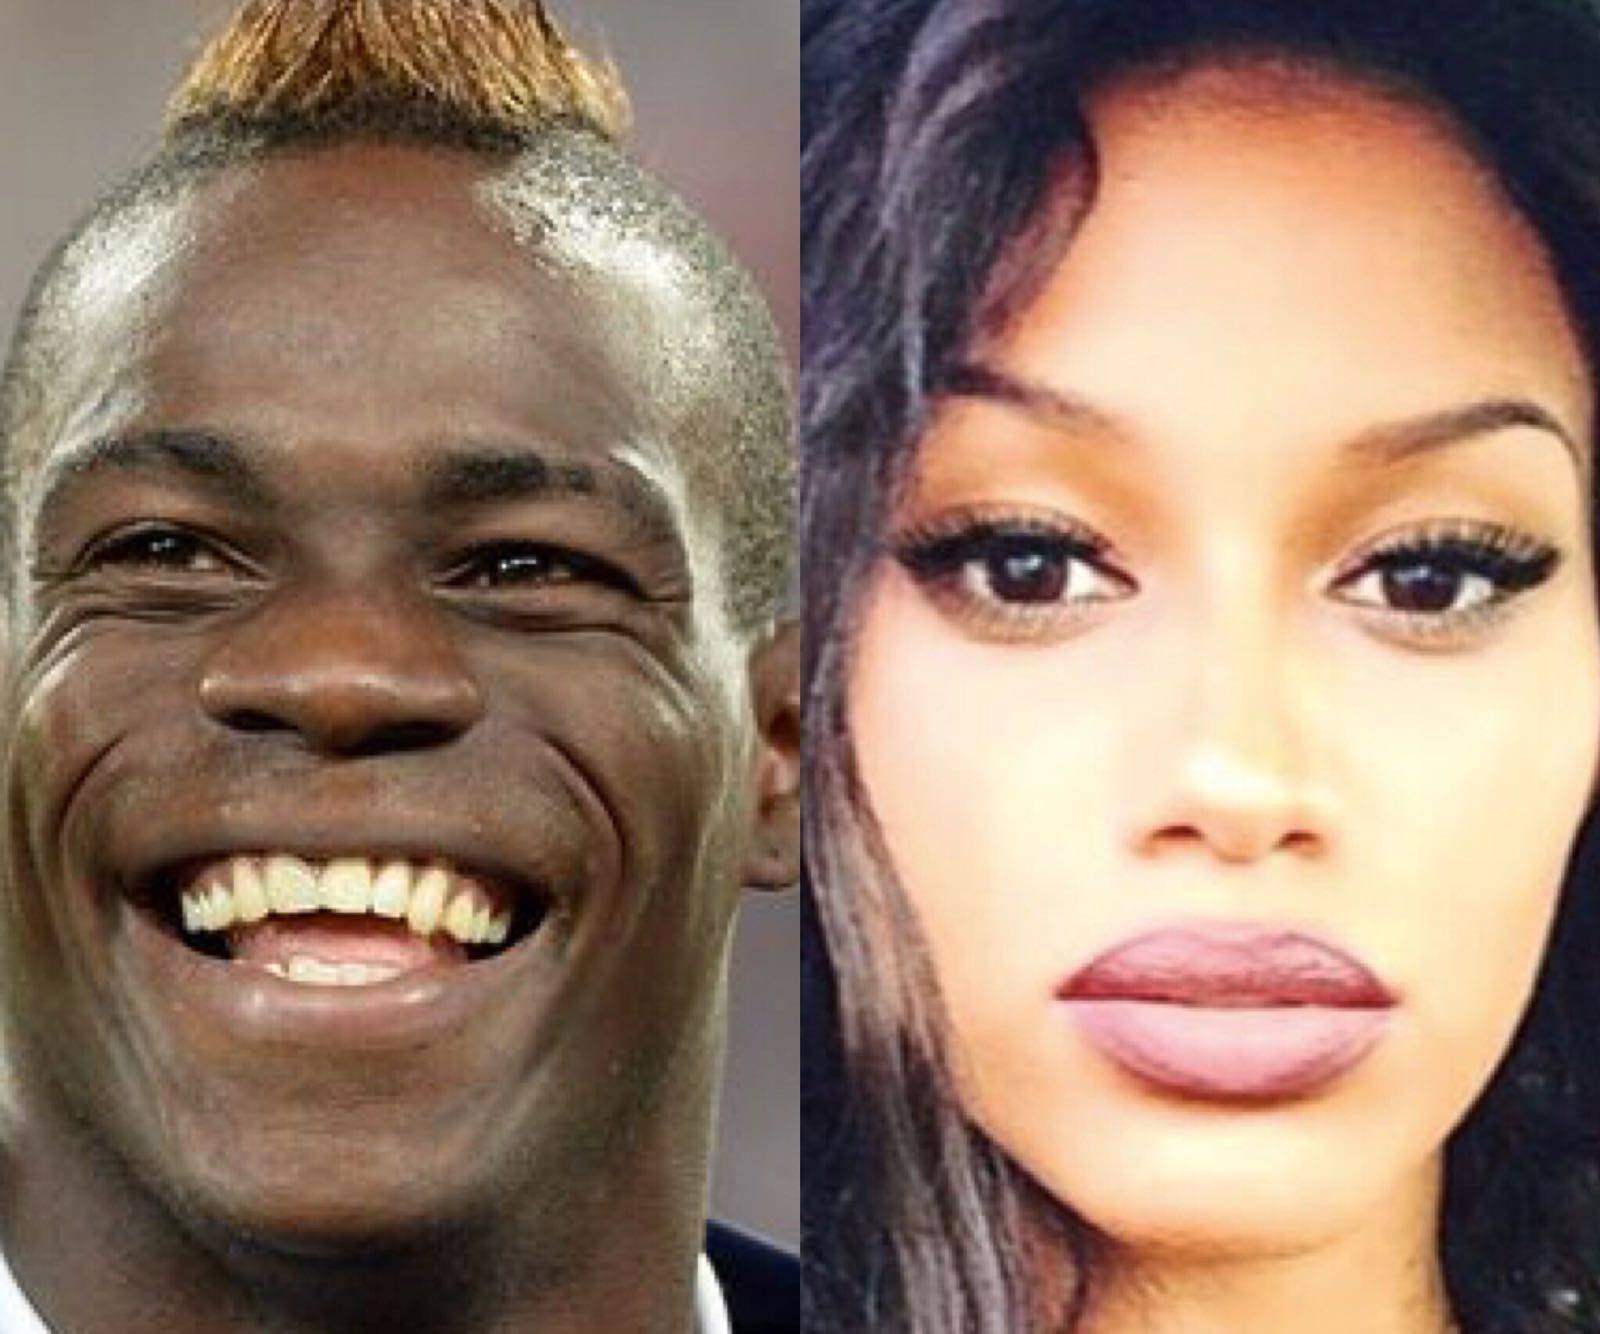 Mario Balotelli provoca sui social e l’ex fidanzata Fanny Neguesha replica al veleno: “Neanche con tutti i soldi che hai le donne riescono a stare con te!”